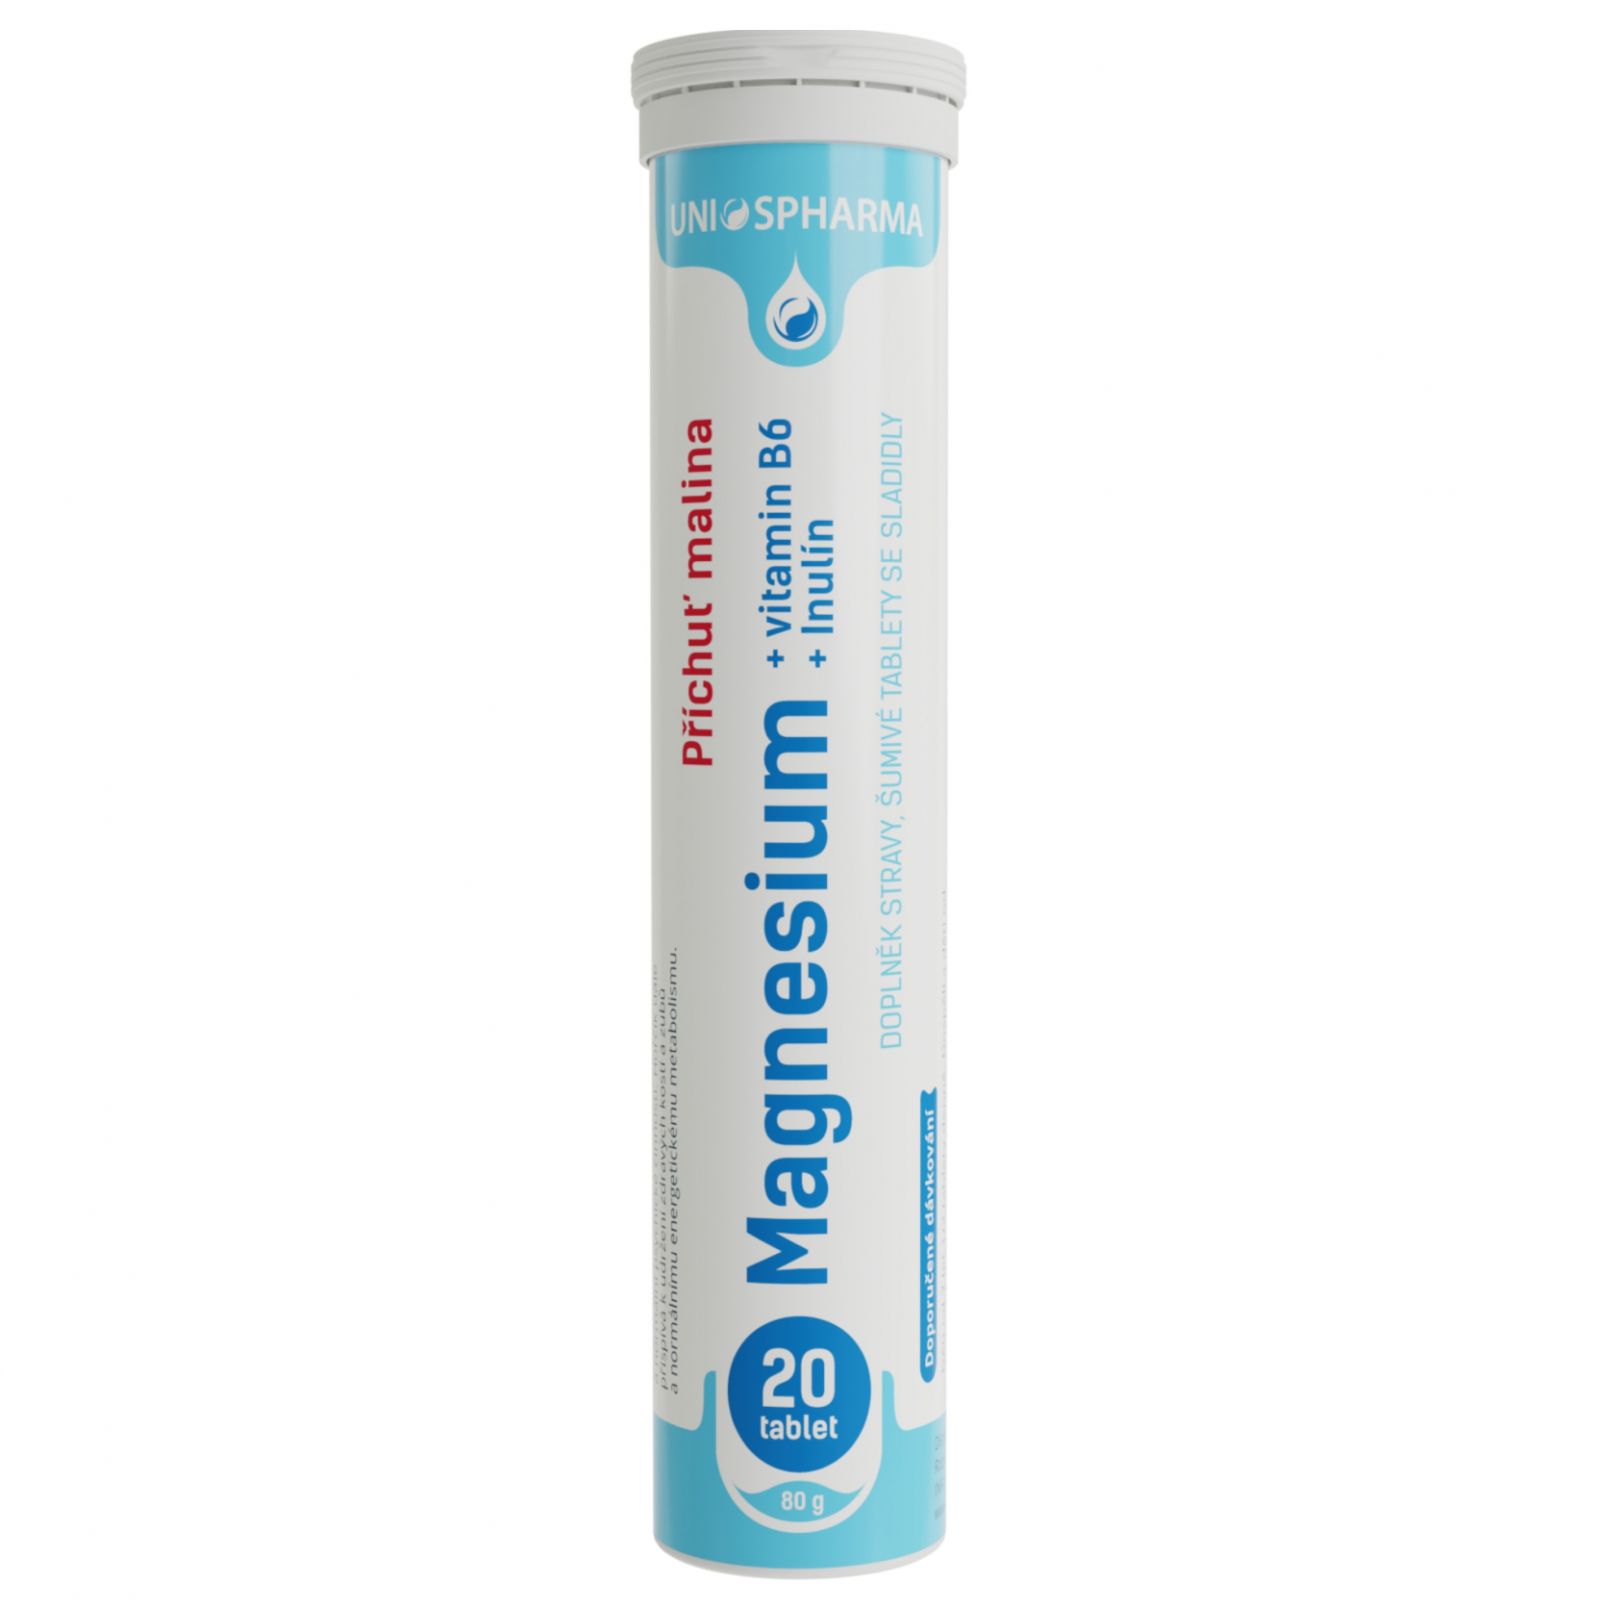  Unios Pharma Šumák Magnesium + vitamin B6 + inulin - 20 šumivých tablet